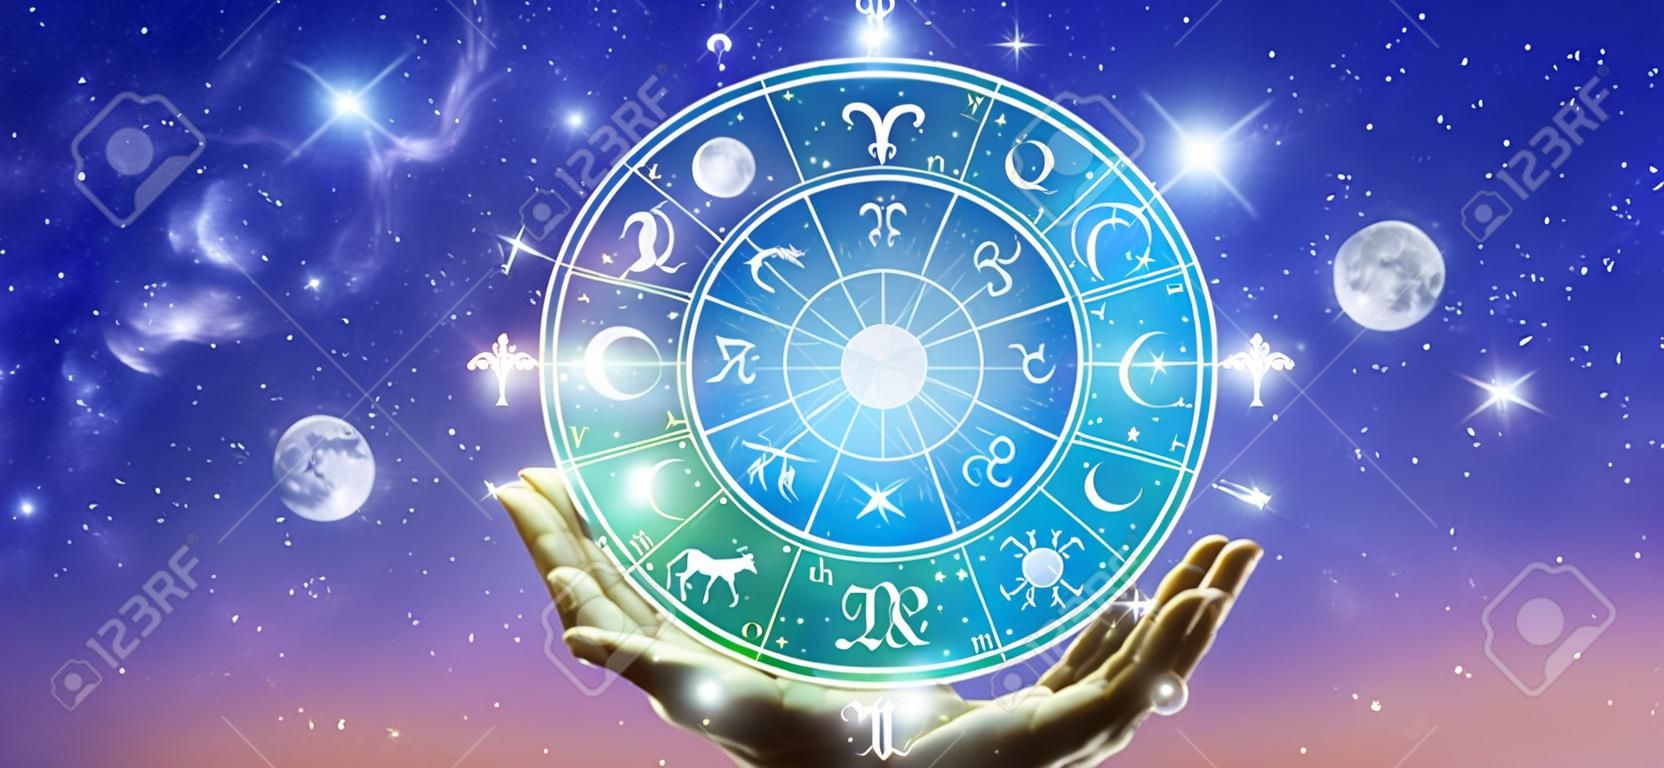 Astrologiczne znaki zodiaku wewnątrz koła horoskopu. astrologia, znajomość gwiazd na niebie nad Drogą Mleczną i Księżycem. moc koncepcji wszechświata.